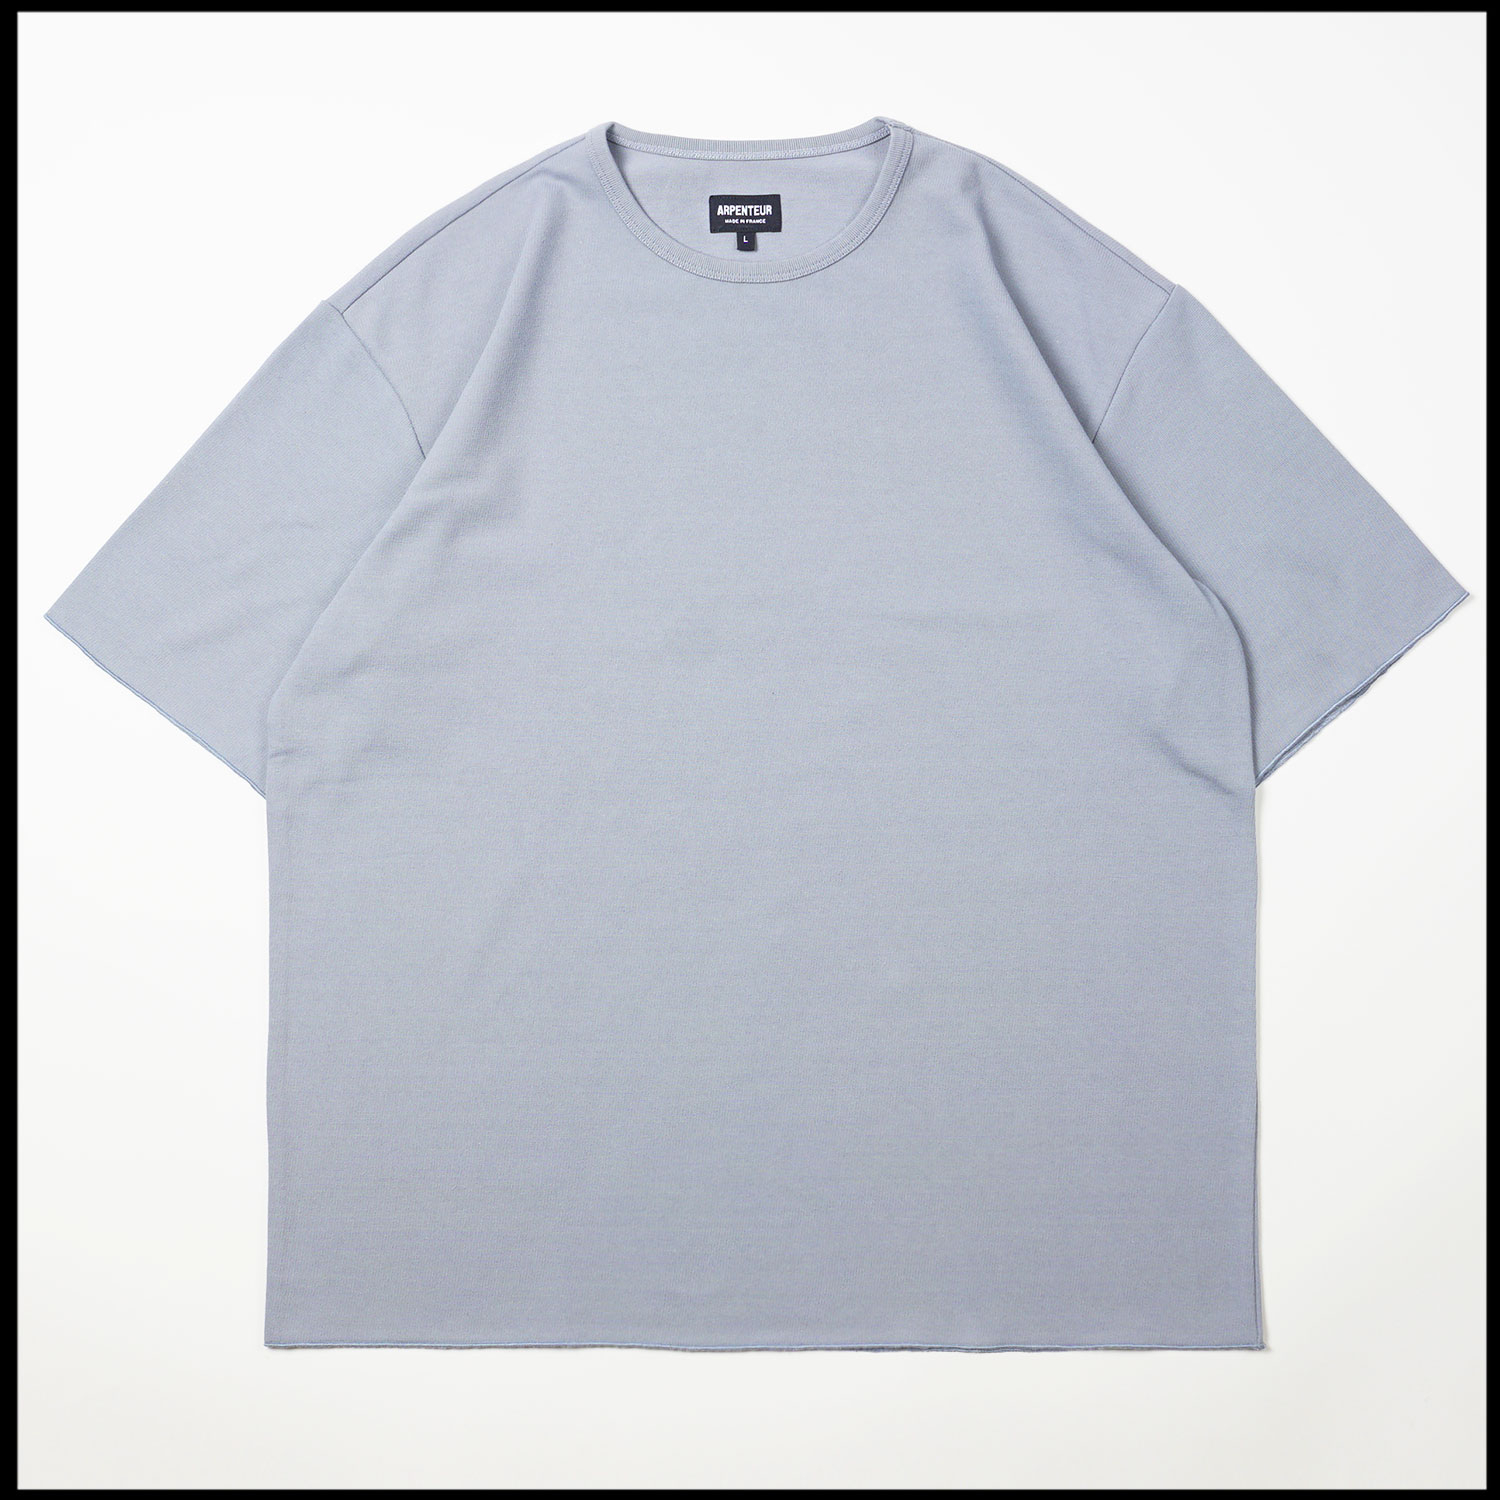 Pontus t-shirt in Saxe blue color by Arpenteur